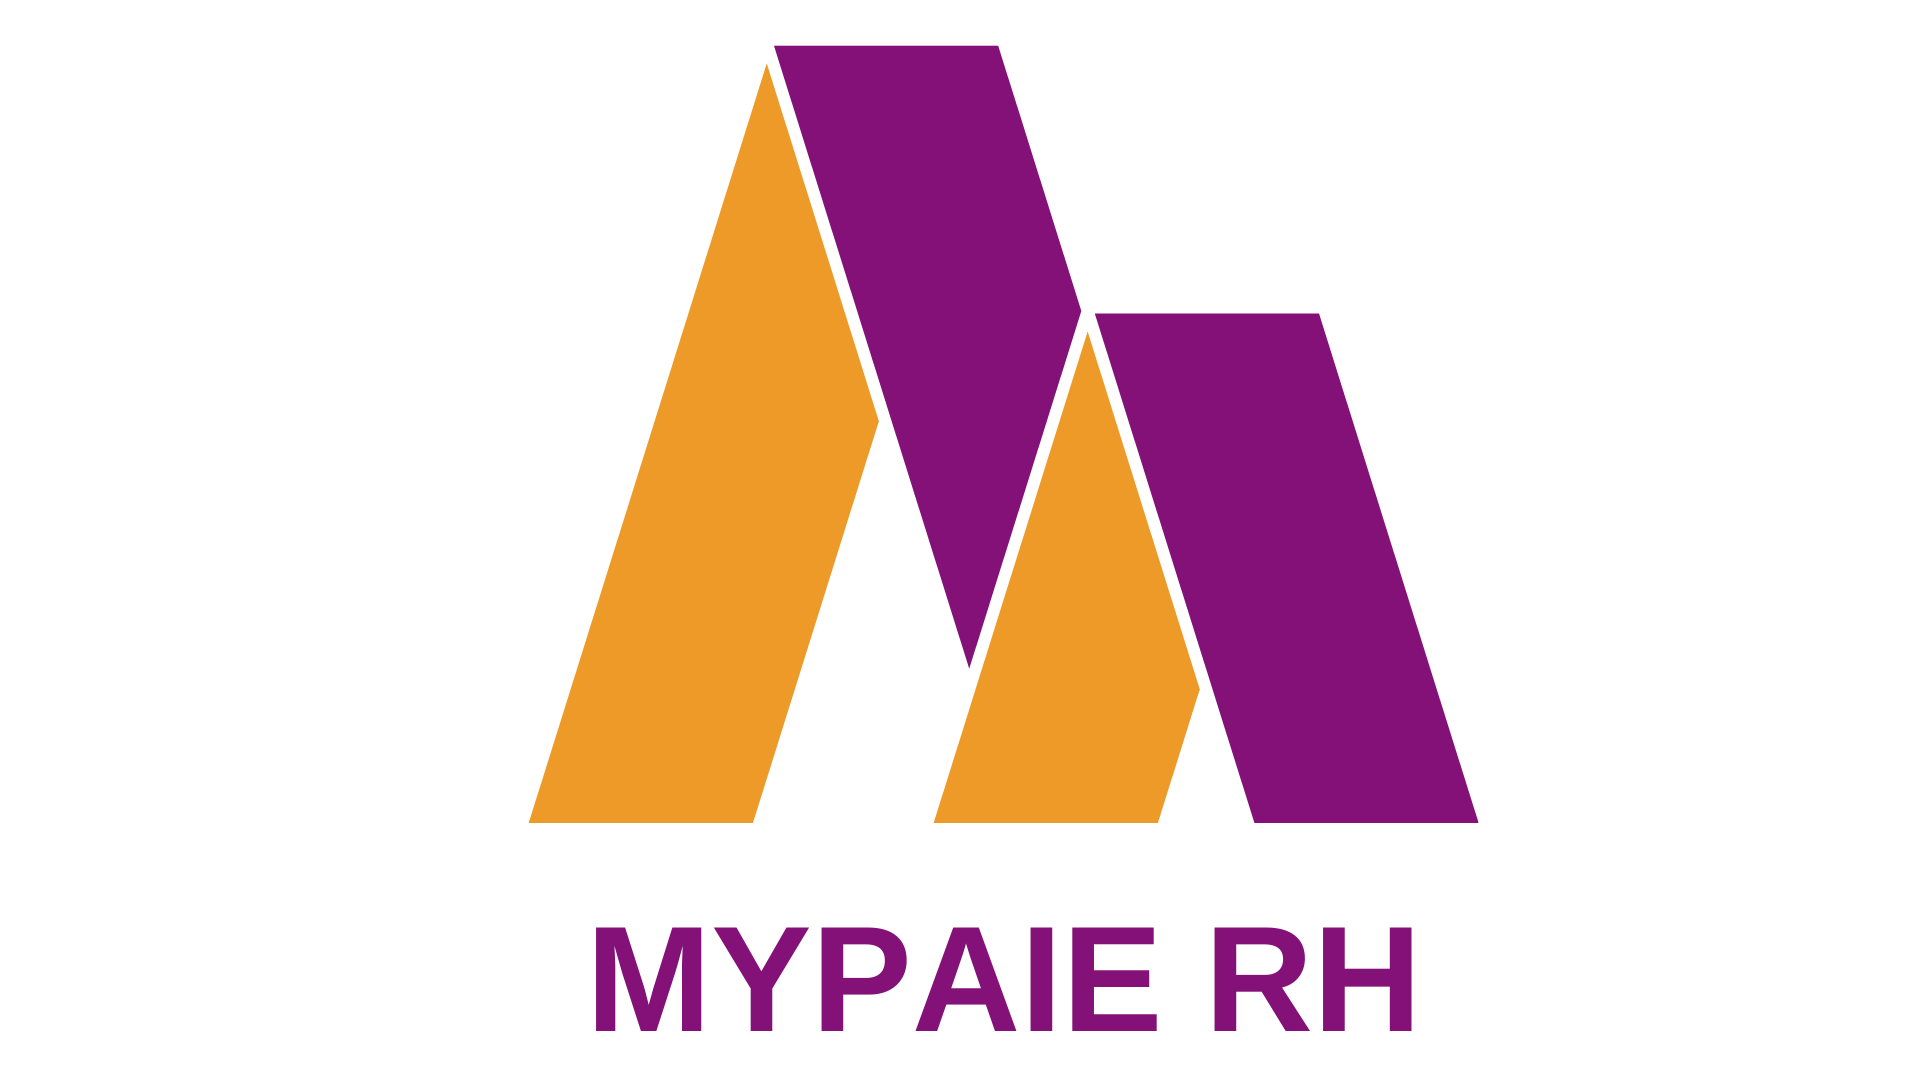 MYPAIE RH logo